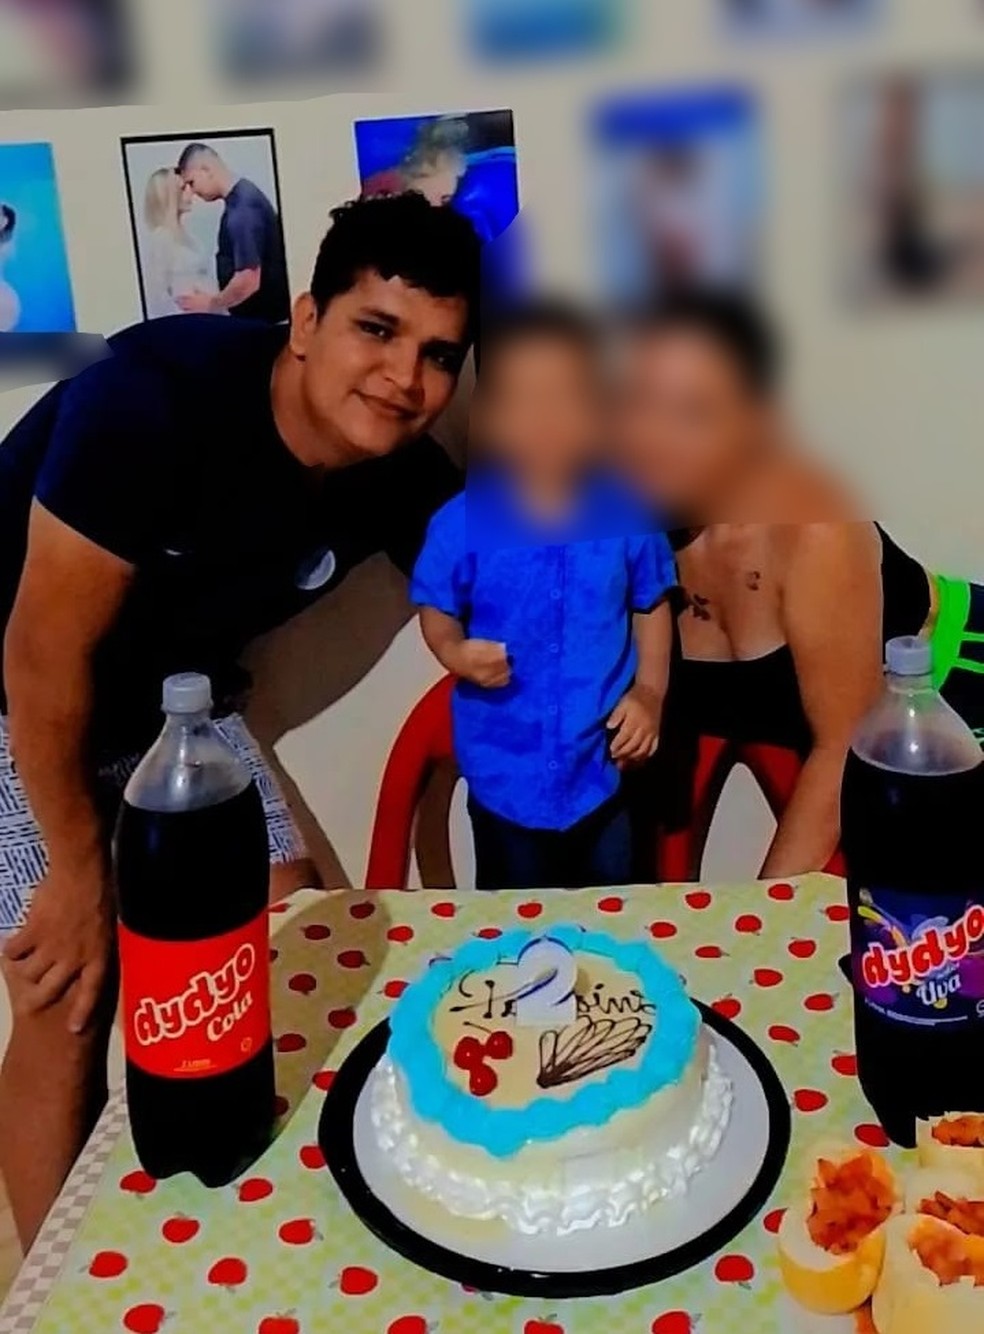 Funcionário demitido de empresa depois de postar foto no aniversário do filho com produto rival — Foto: Keoma Oliveira/Arquivo Pessoal